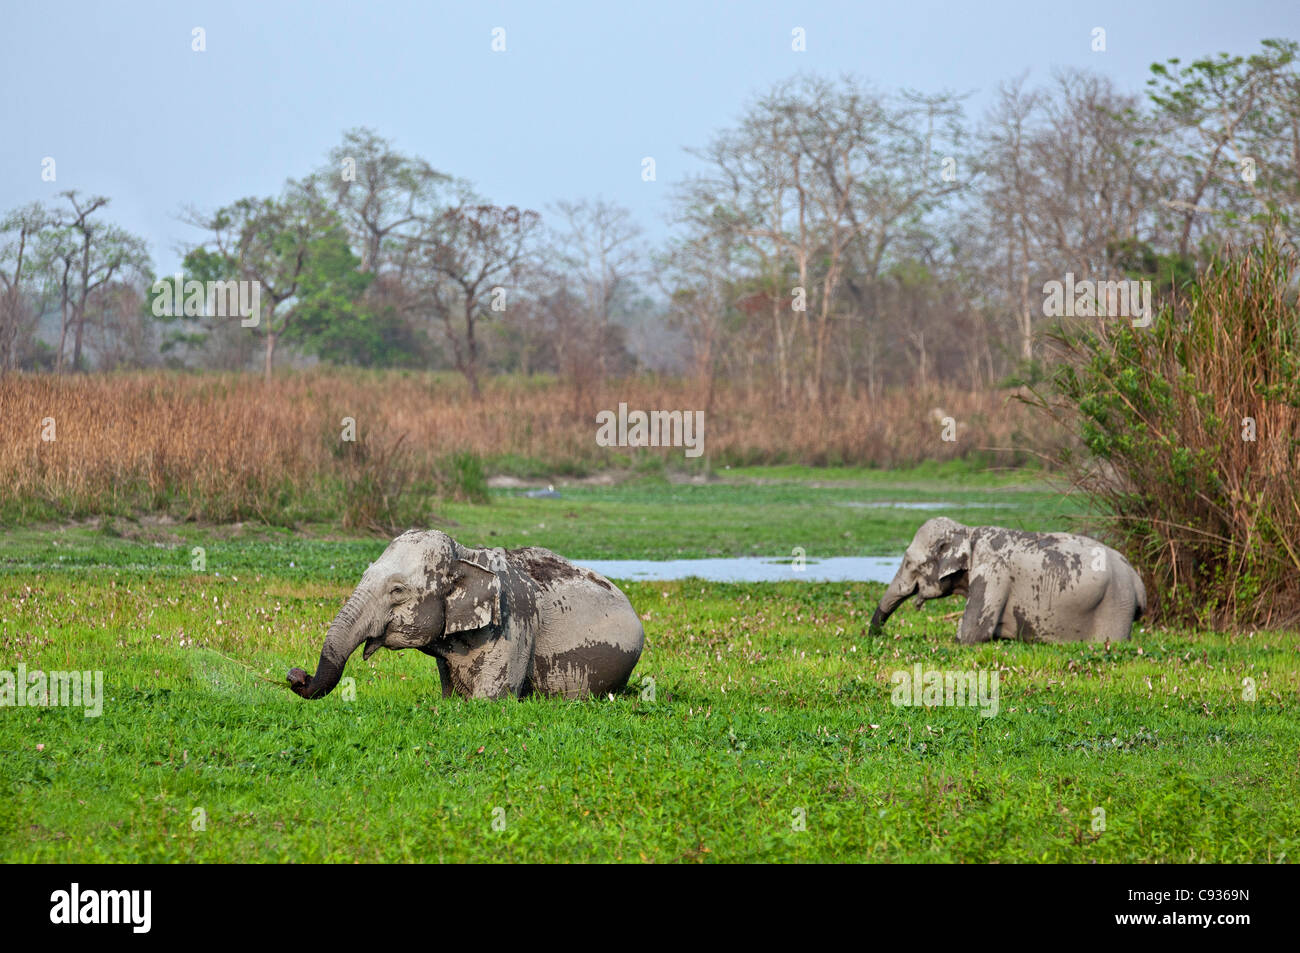 Éléphants Indiens sauvages se nourrissent dans un marais dans le parc national de Kaziranga, Site du patrimoine mondial de l'UNESCO. Banque D'Images